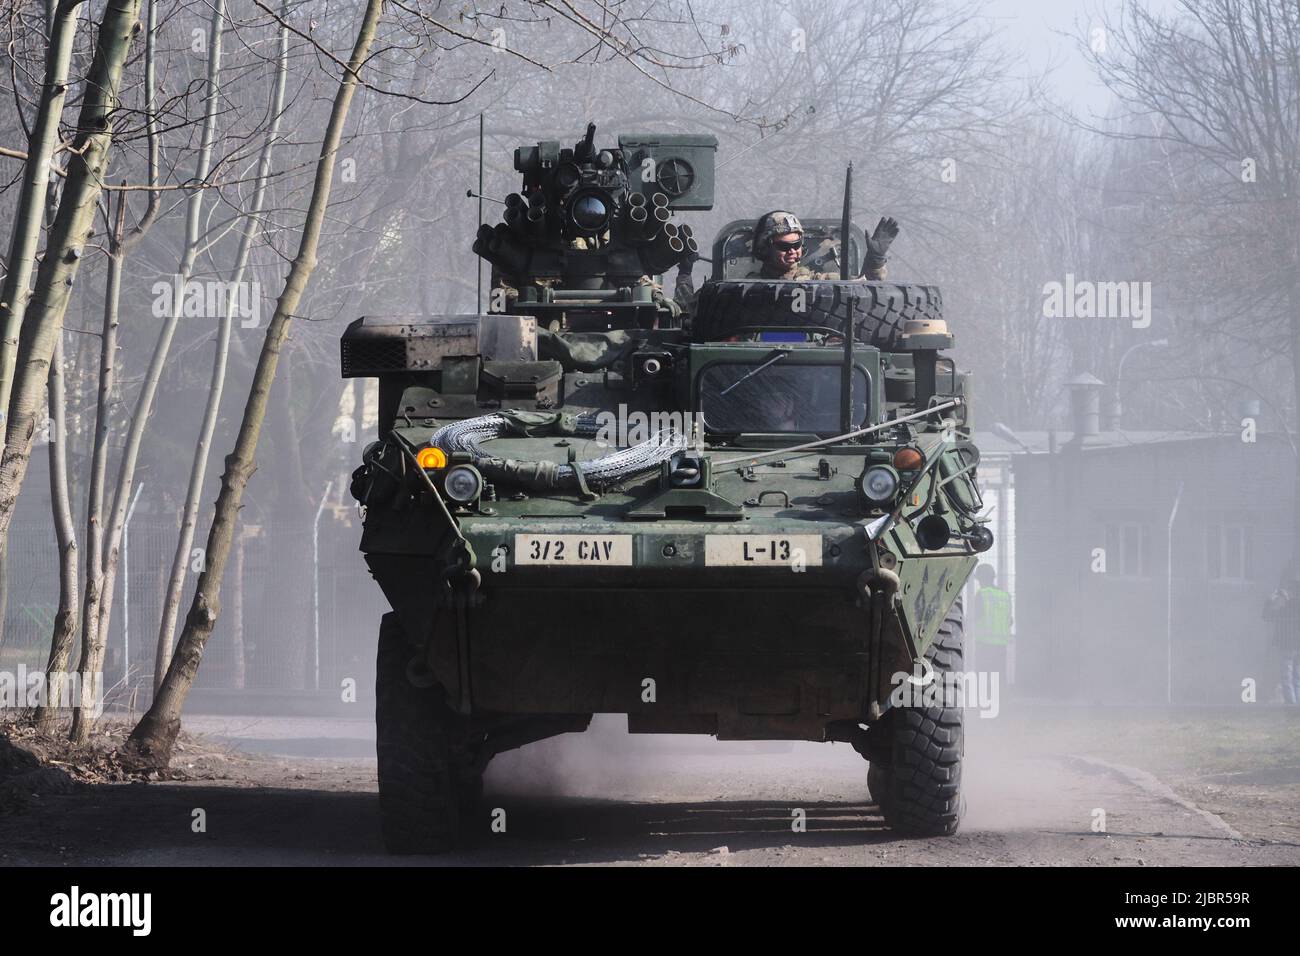 Lublino, Polonia - 25 marzo 2015: Veicolo dell'esercito degli Stati Uniti (vettore del personale Armored) Stryker passando le strade della città Foto Stock